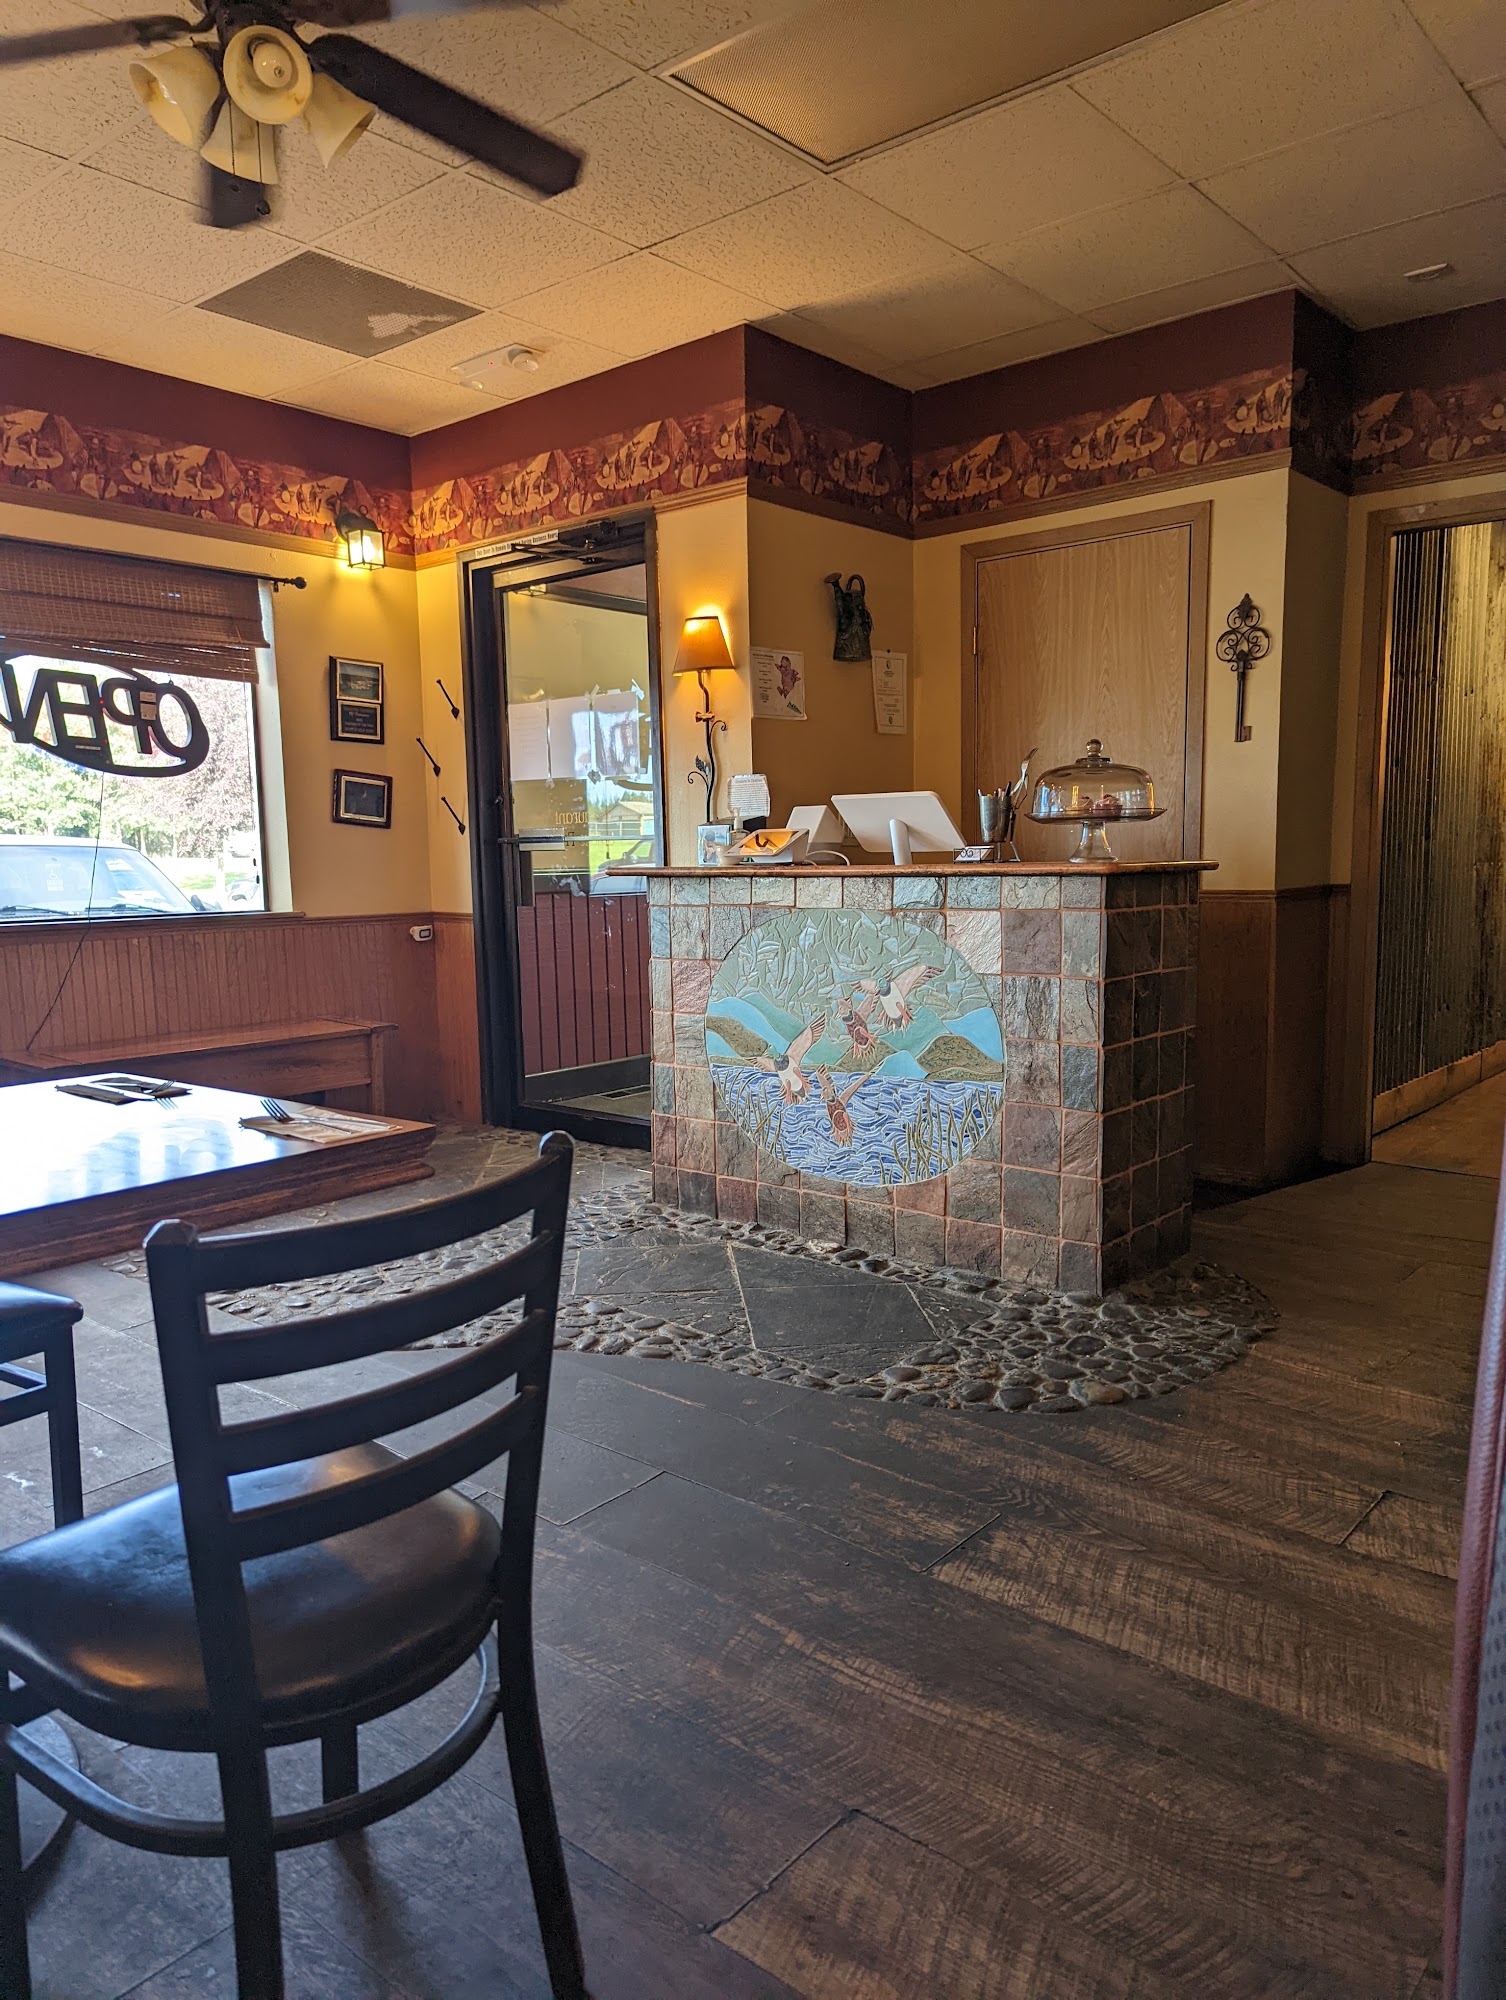 The Duck Inn Bar and Restaurant